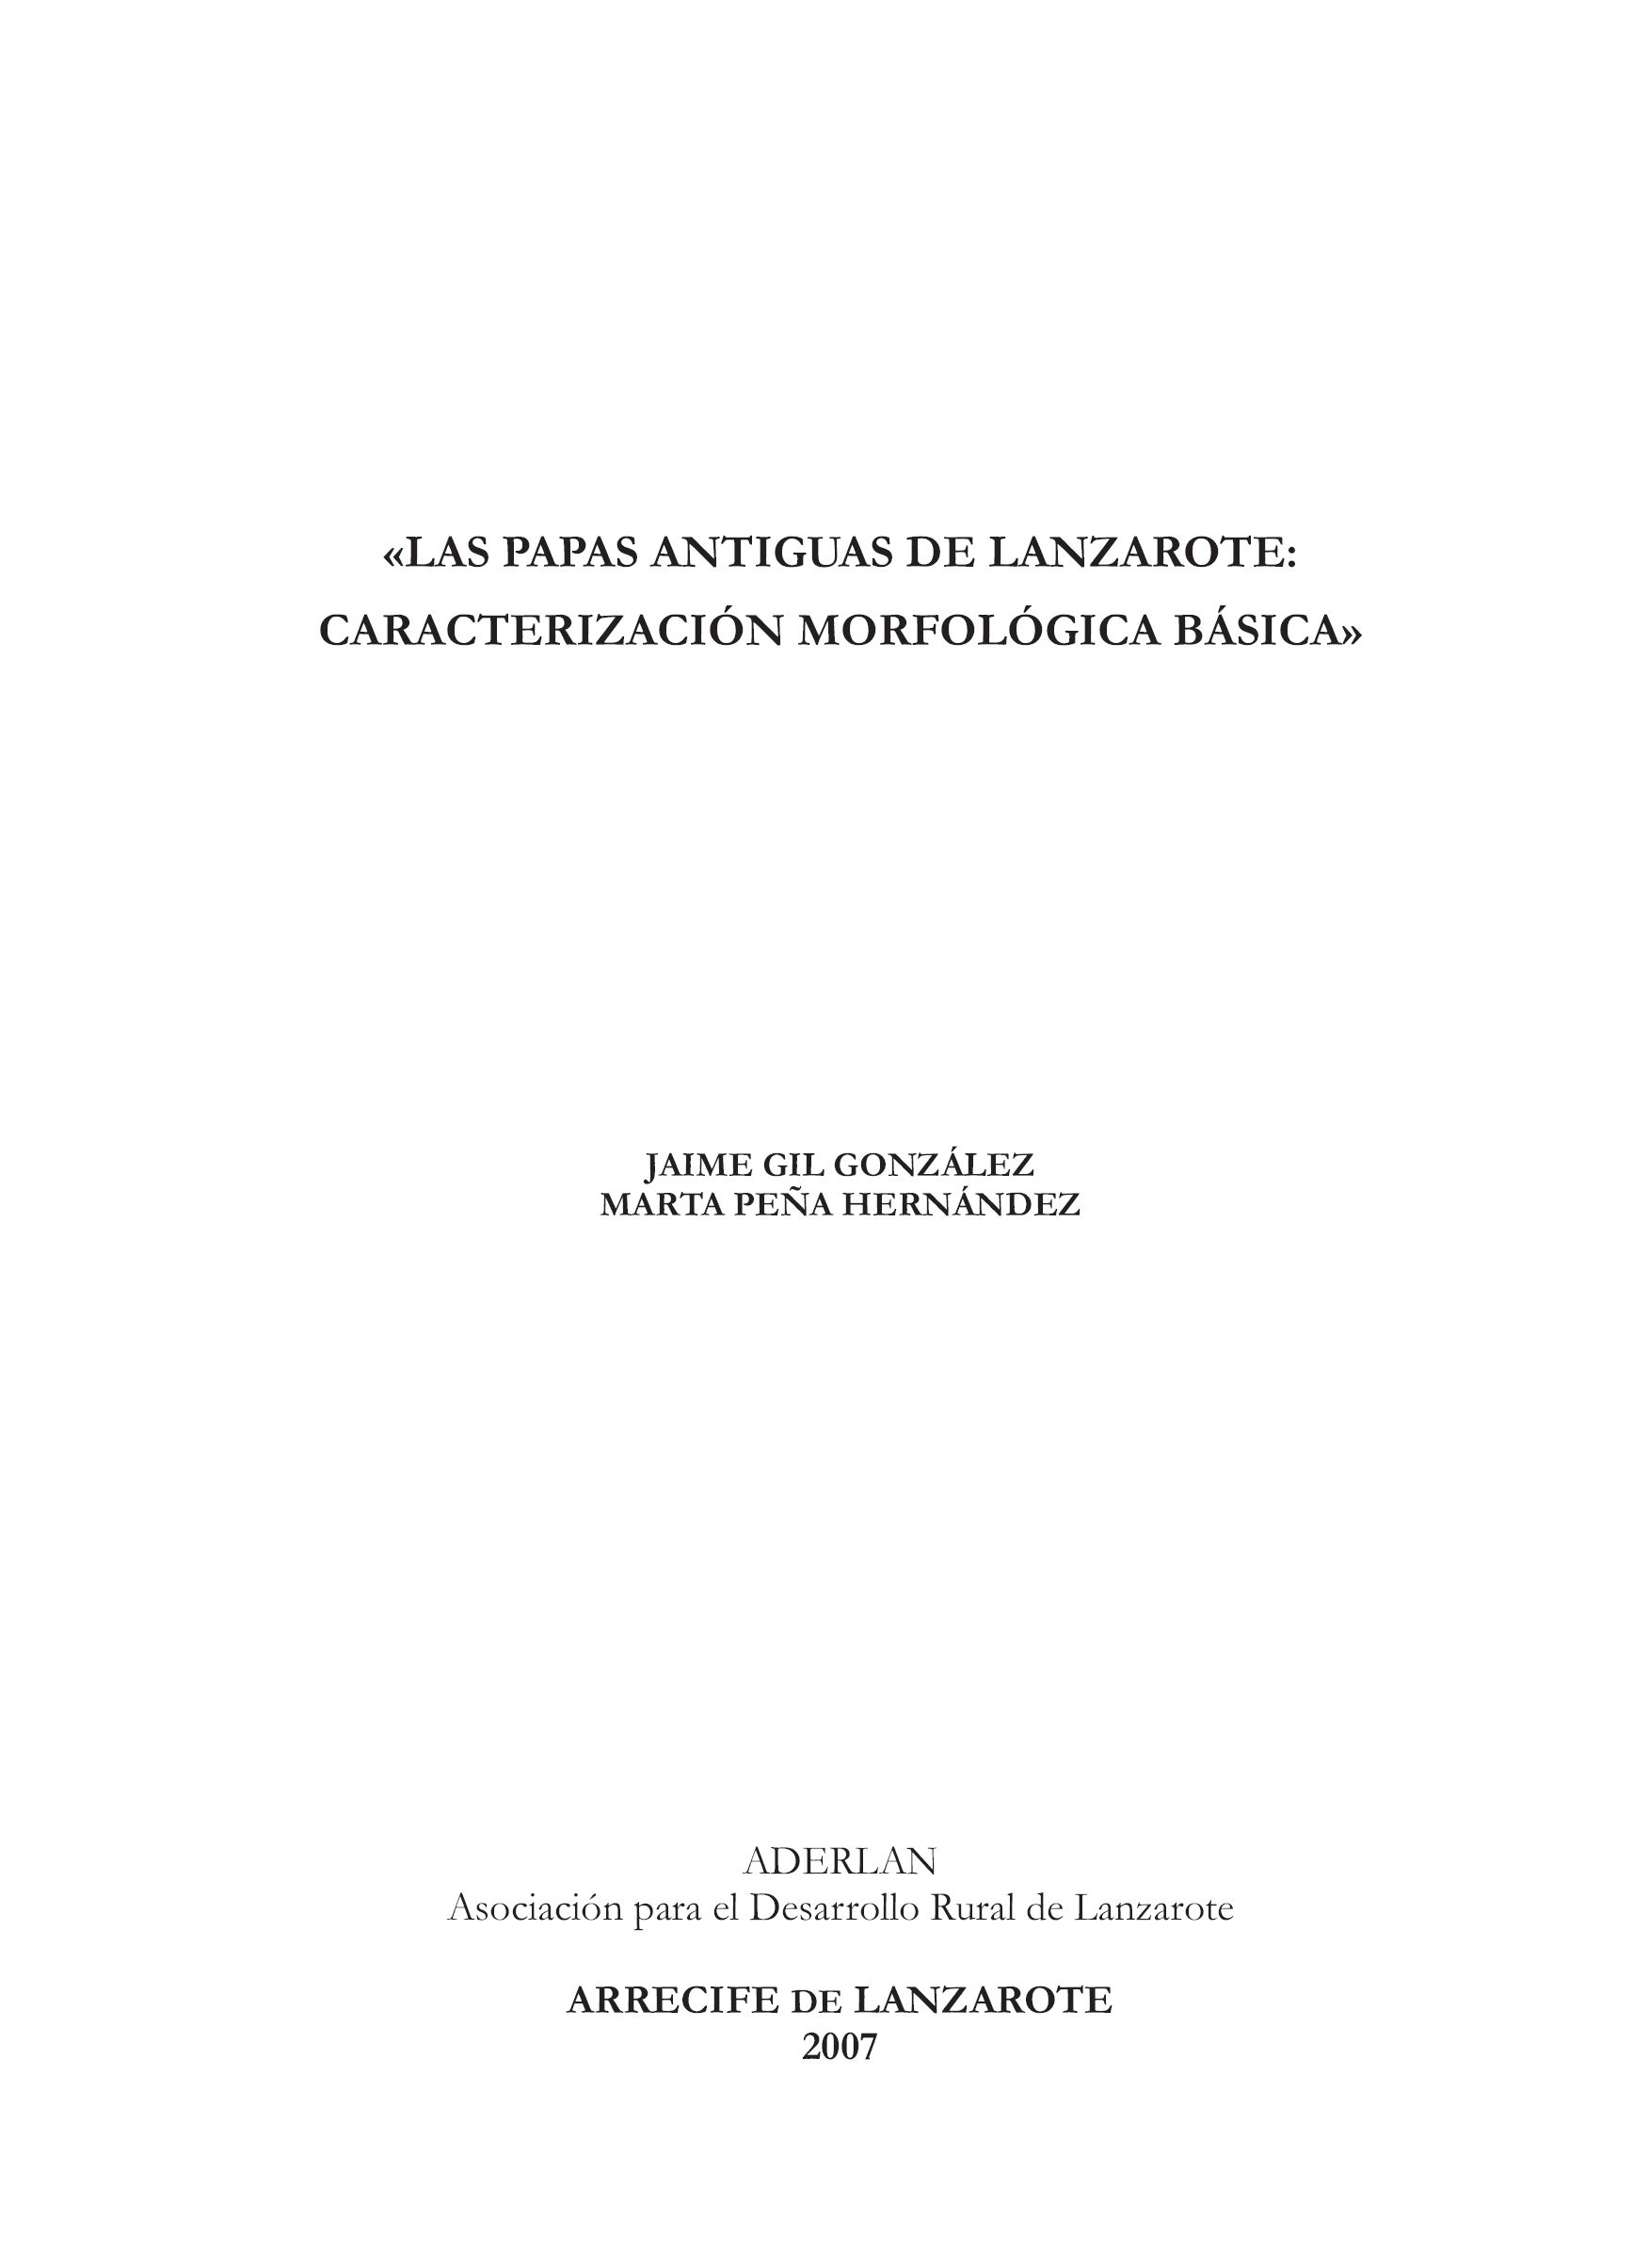 Las papas antiguas de Lanzarote: caracterización morfológica básica